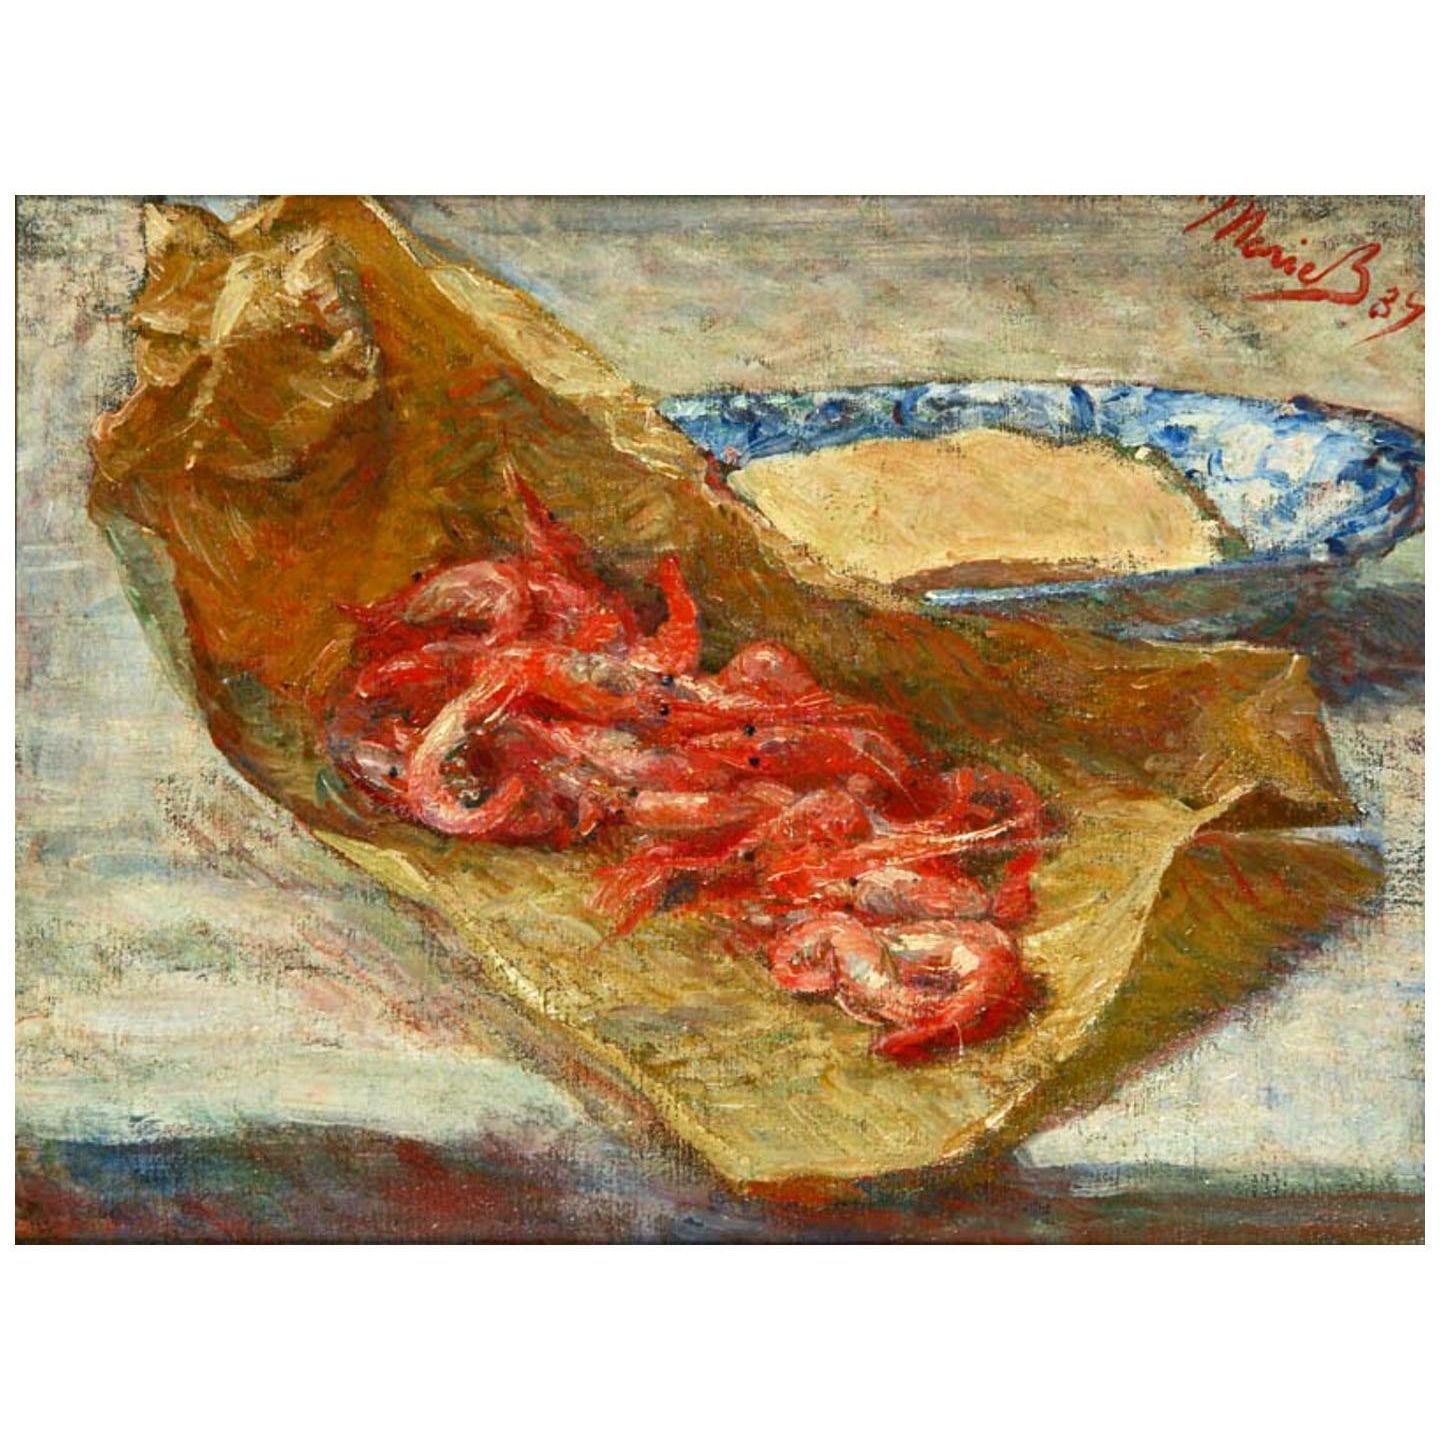 Marie Bracquemond. Les crevettes. 1887. Private collection